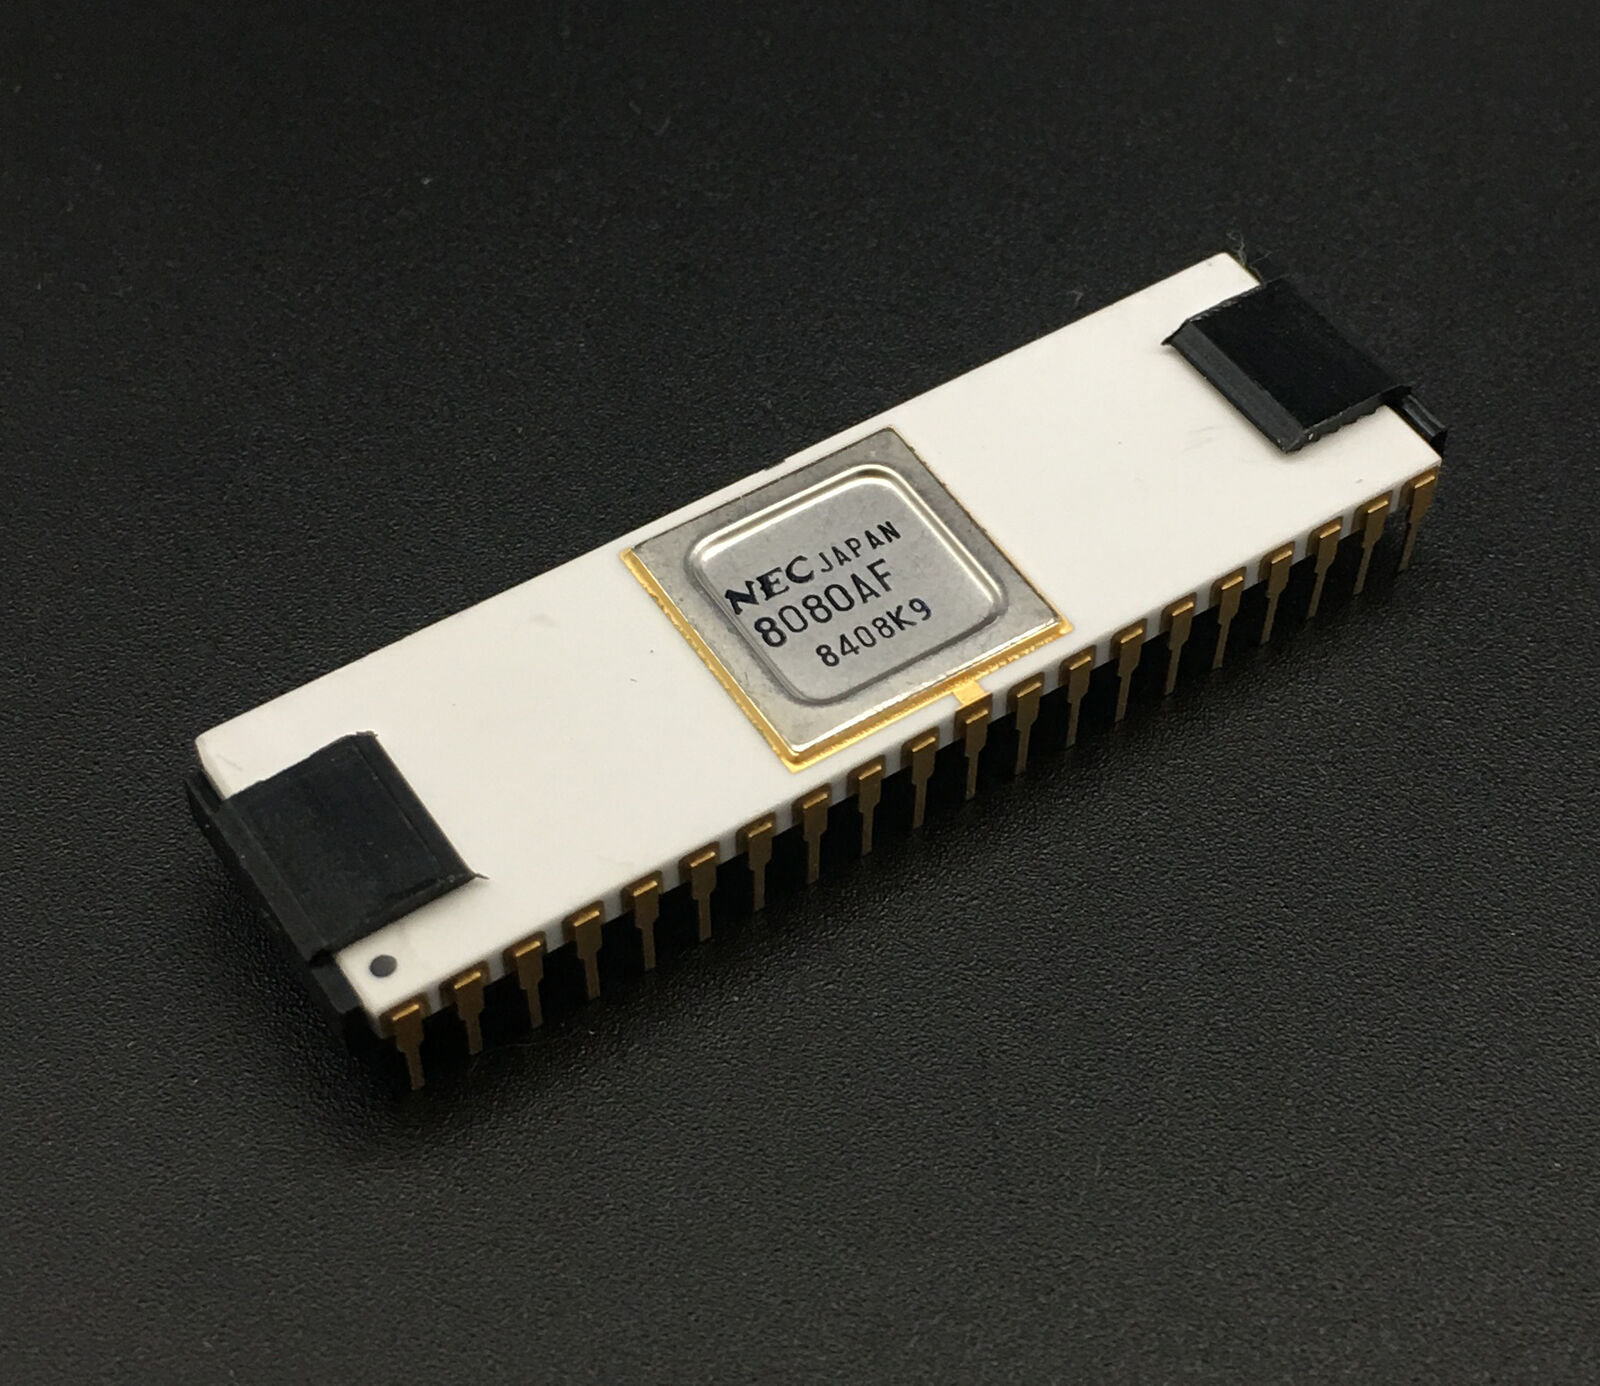 NEC 8080AF CPU White Ceramic DIP40 8bit Processor 2MHz Microprocessor NOS Tested